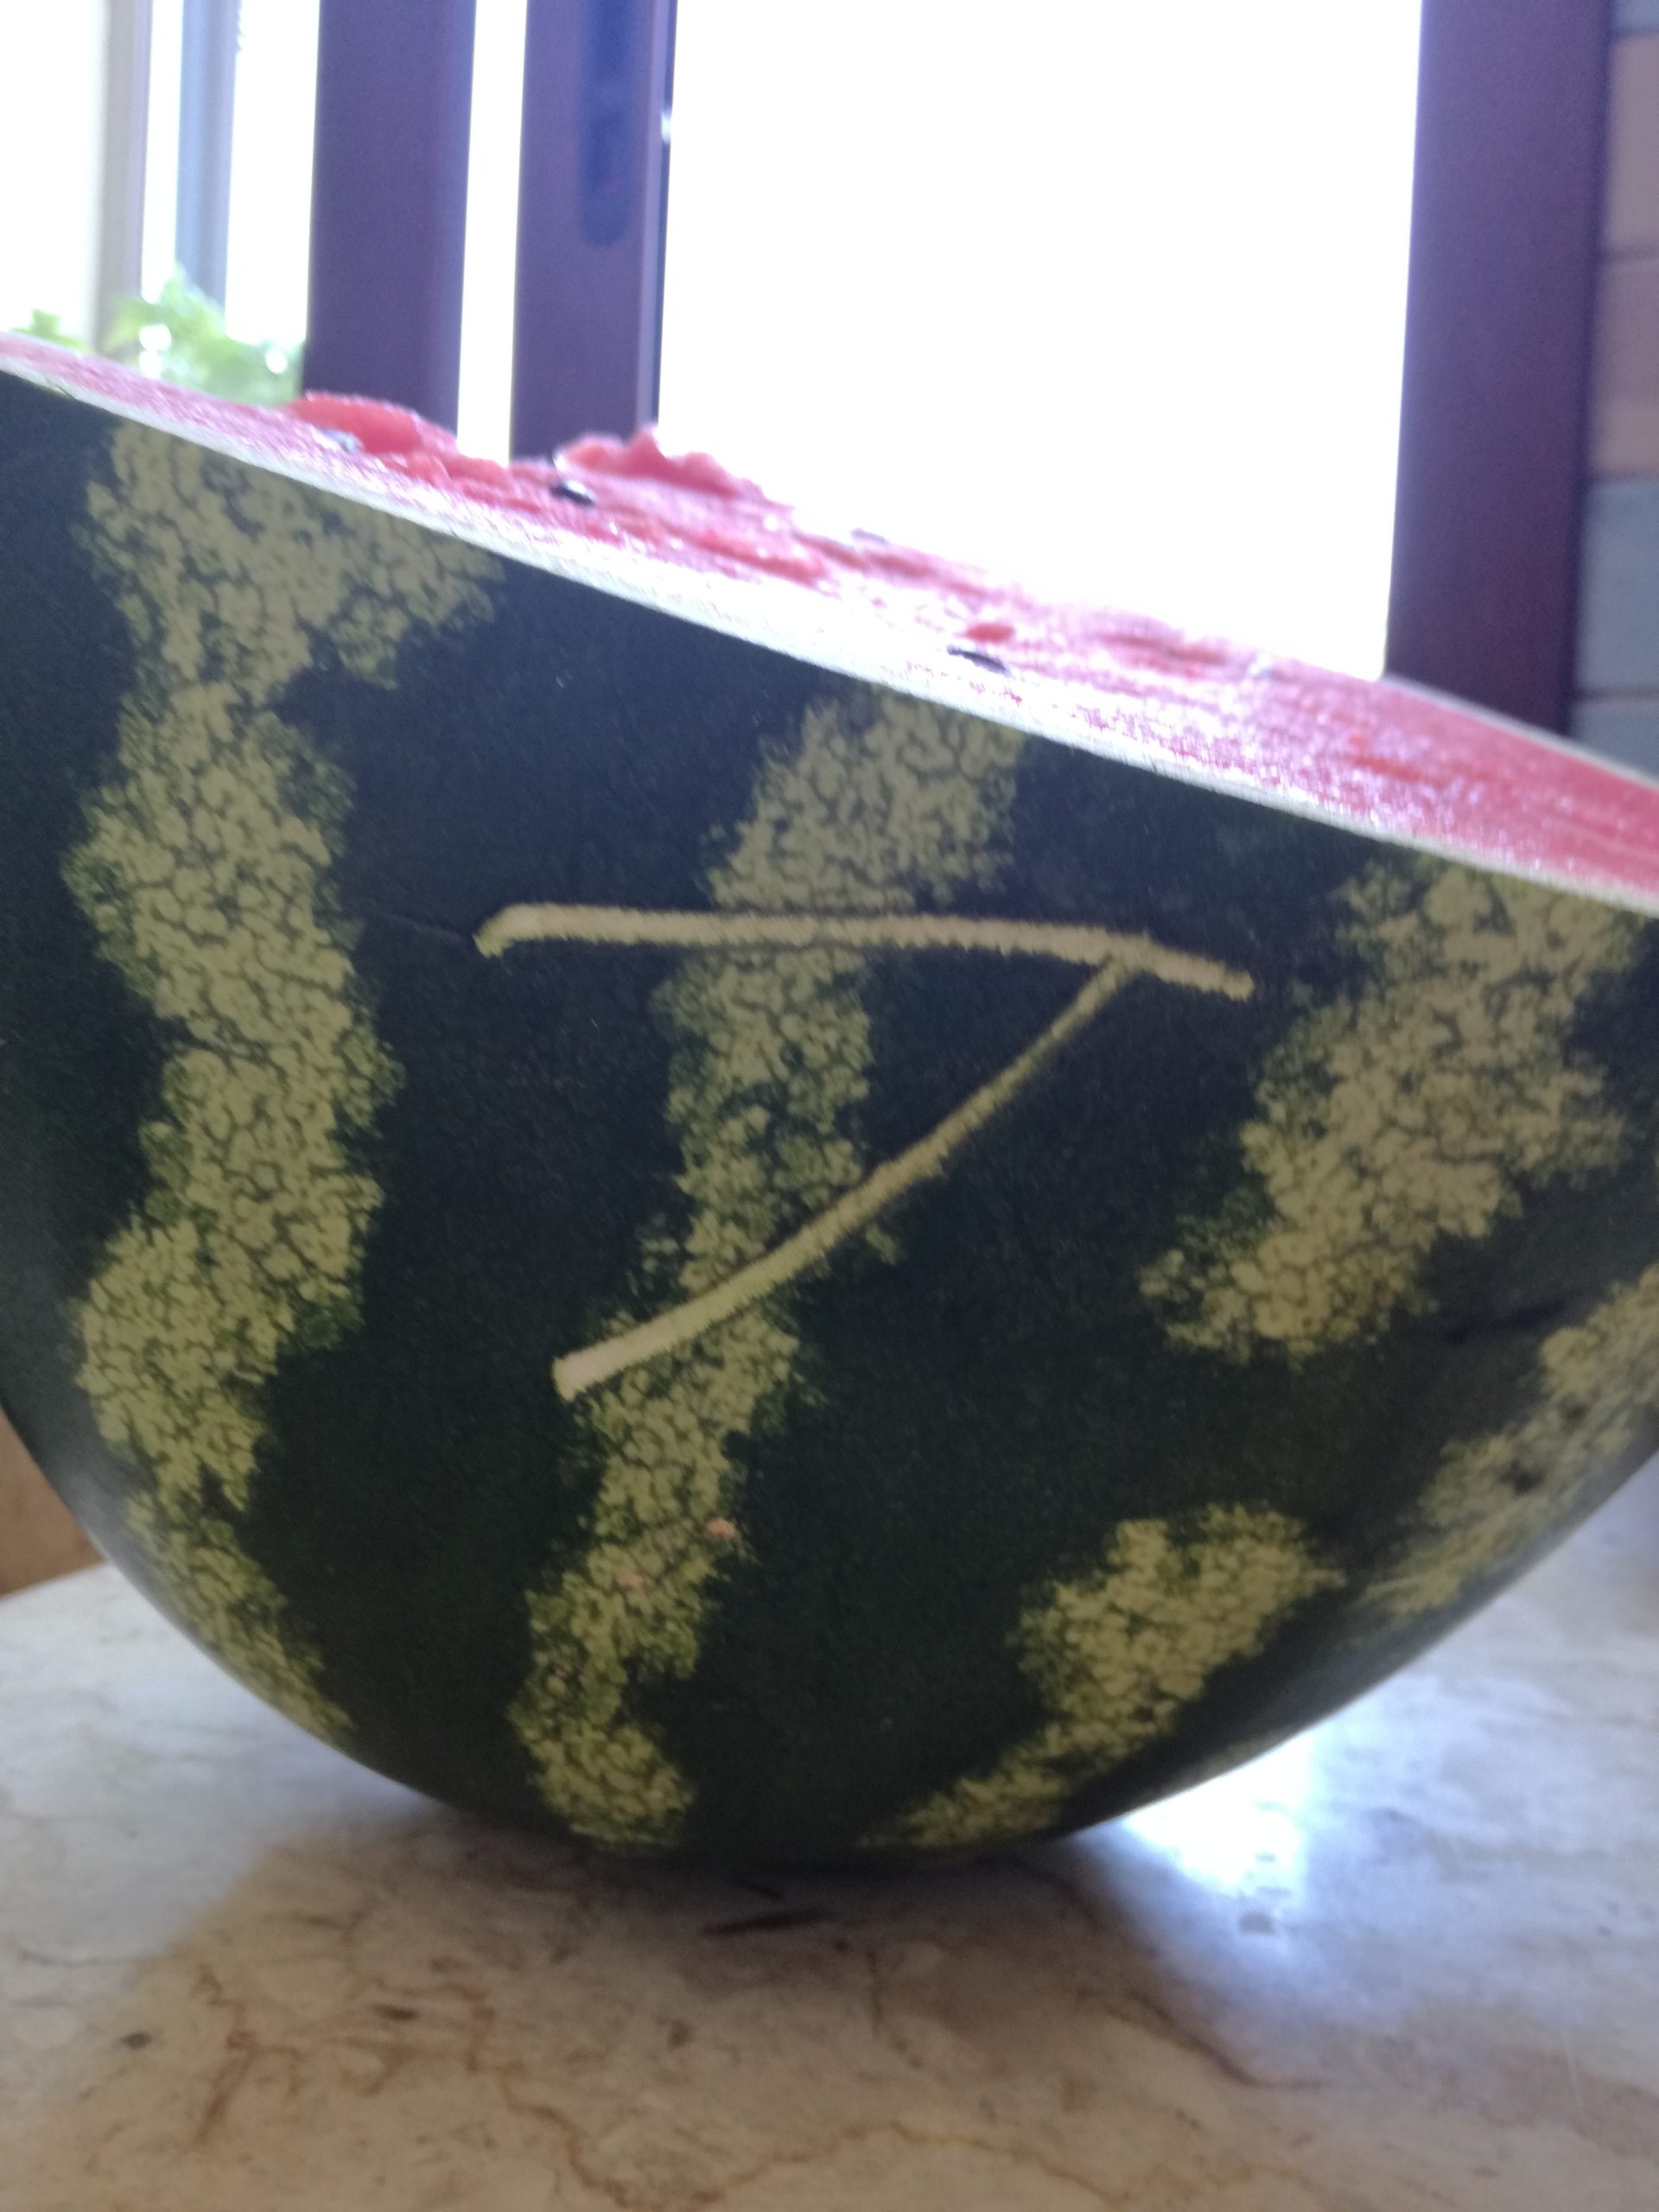 Besonderes Zeichen auf der Wassermelone